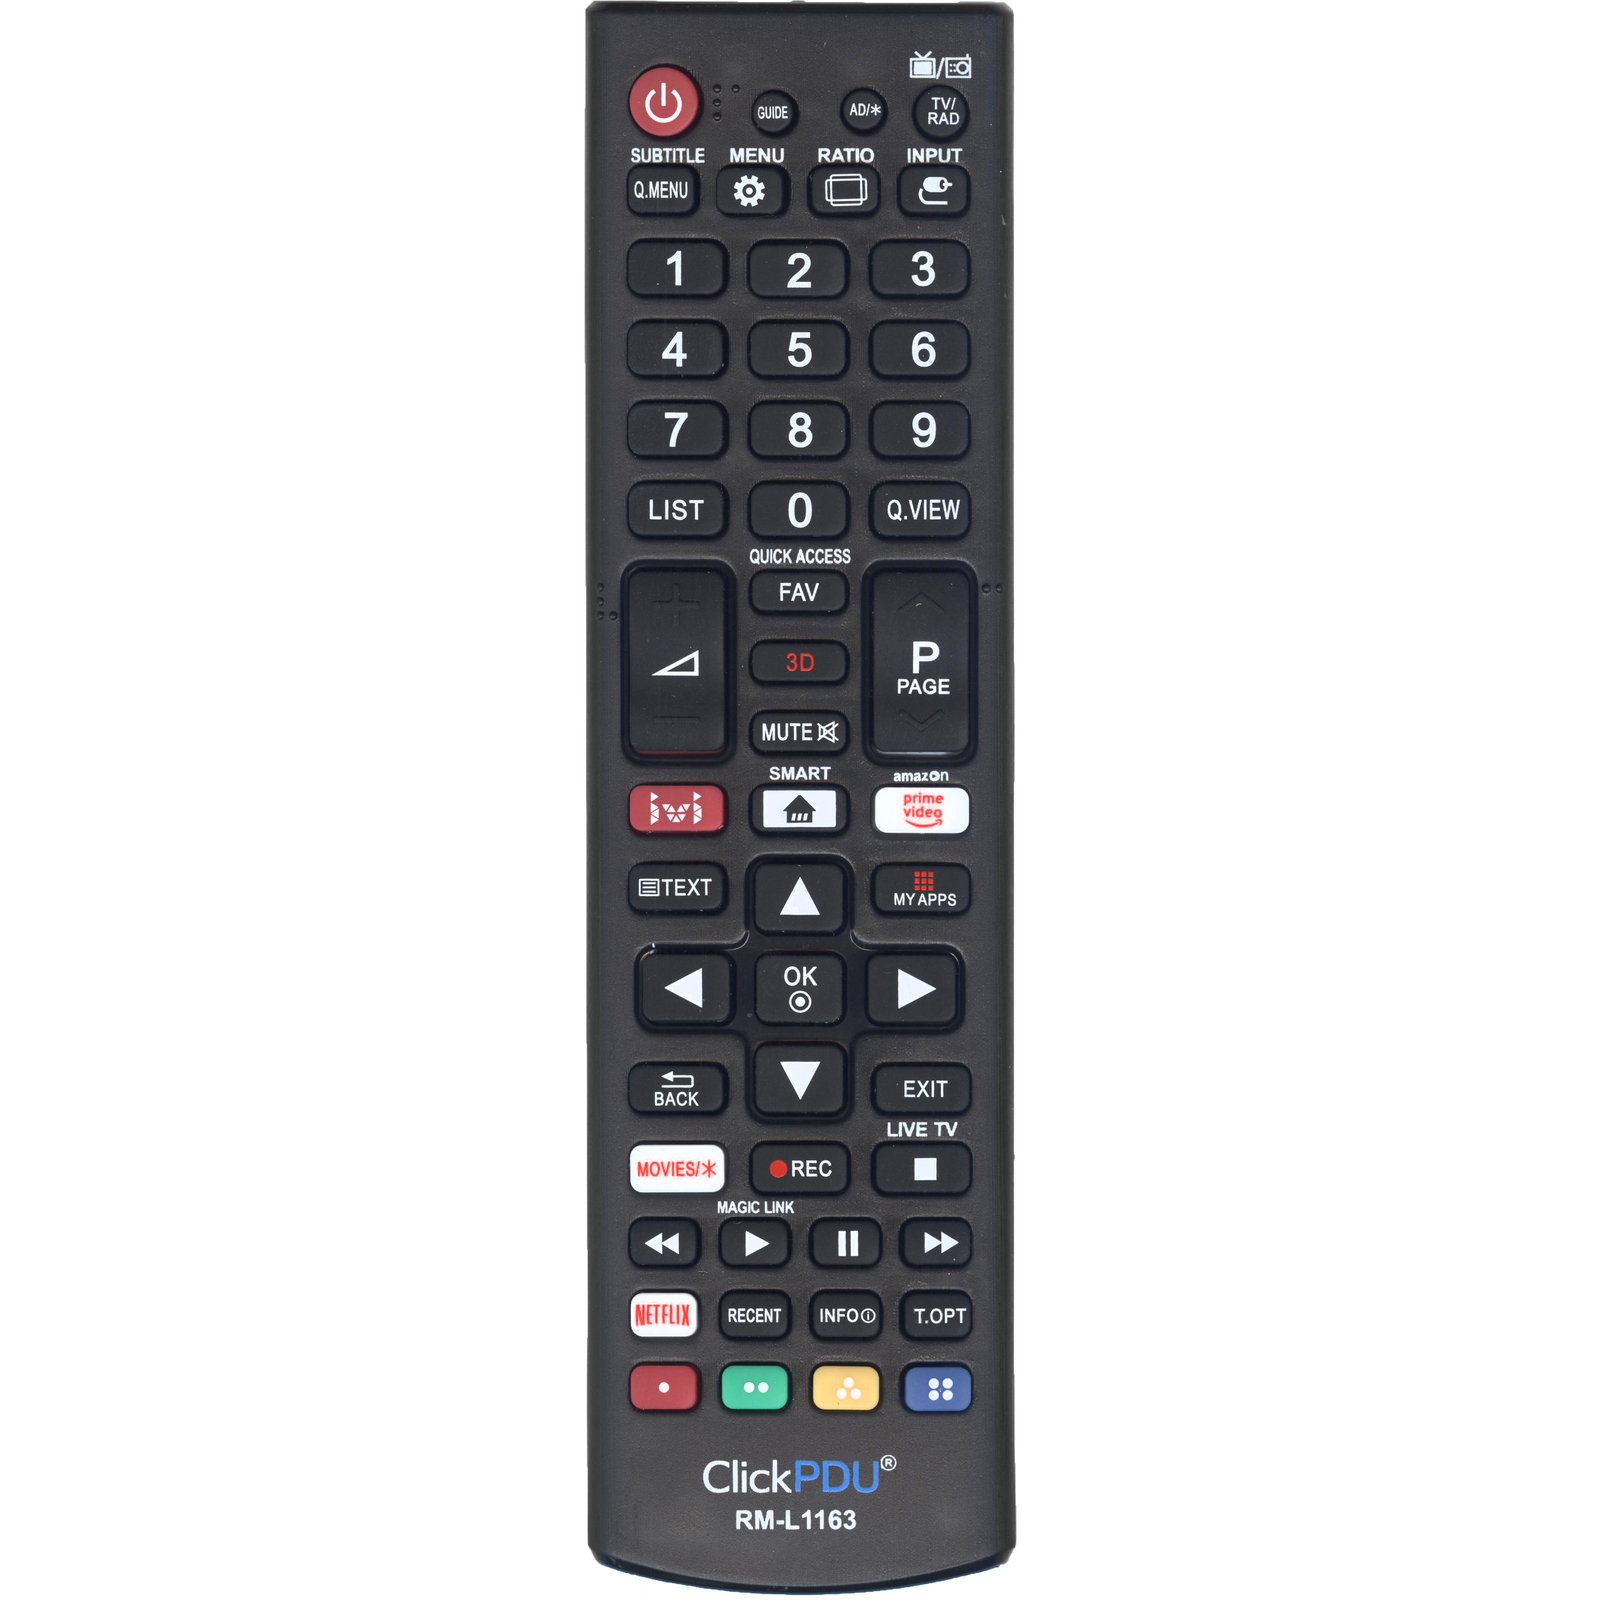 Пульт универсальный ClickPdu RM-L1162 (HOD814) для телевизоров LG